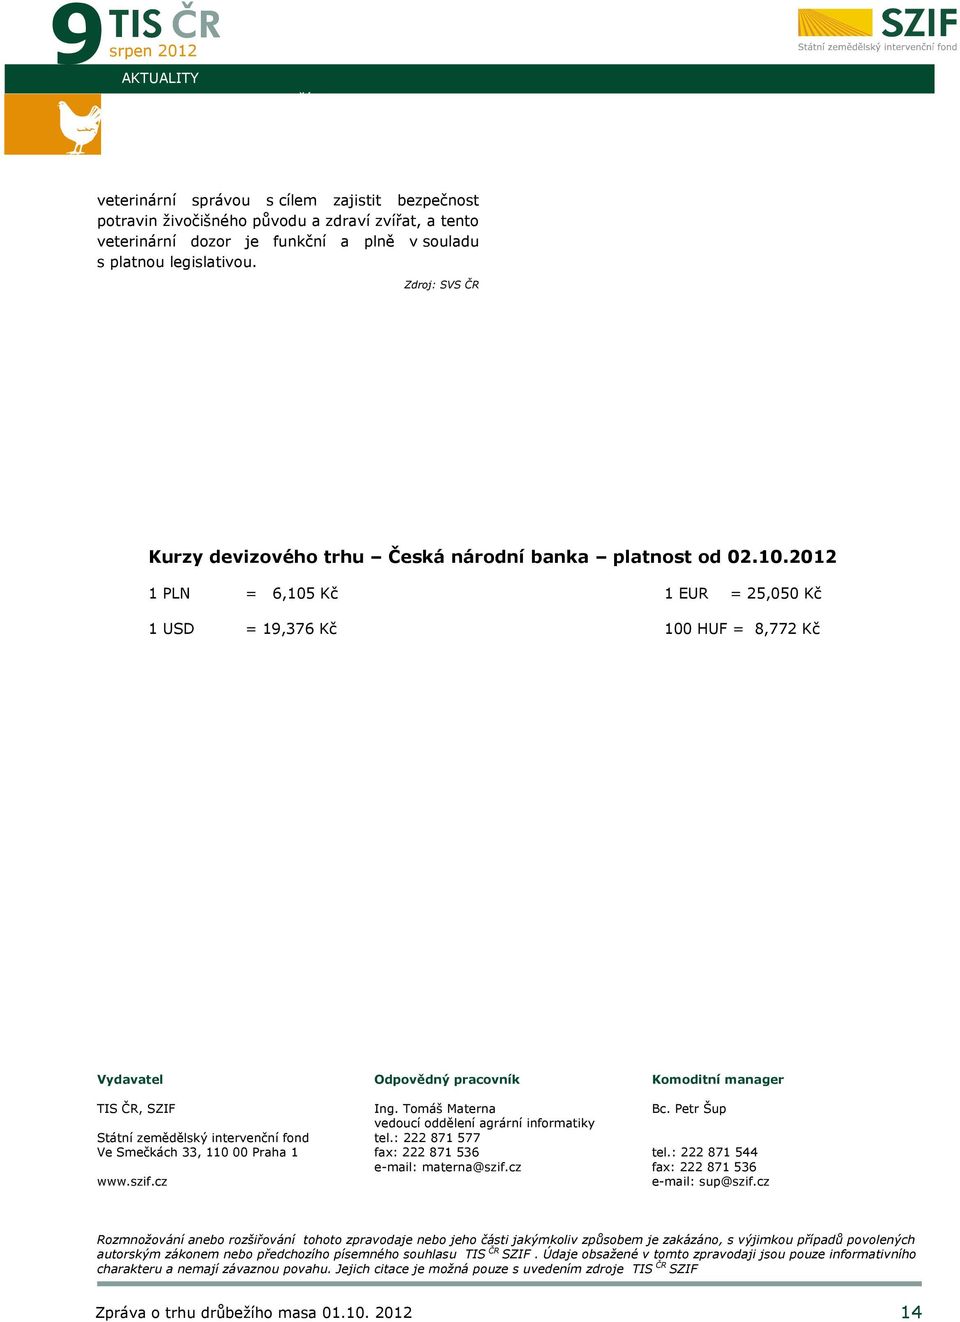 2012 1 PLN = 6,105 Kč 1 EUR = 25,050 Kč 1 USD = 19,376 Kč 100 HUF = 8,772 Kč Vydavatel TIS ČR, SZIF Státní zemědělský intervenční fond Ve Smečkách 33, 110 00 Praha 1 www.szif.